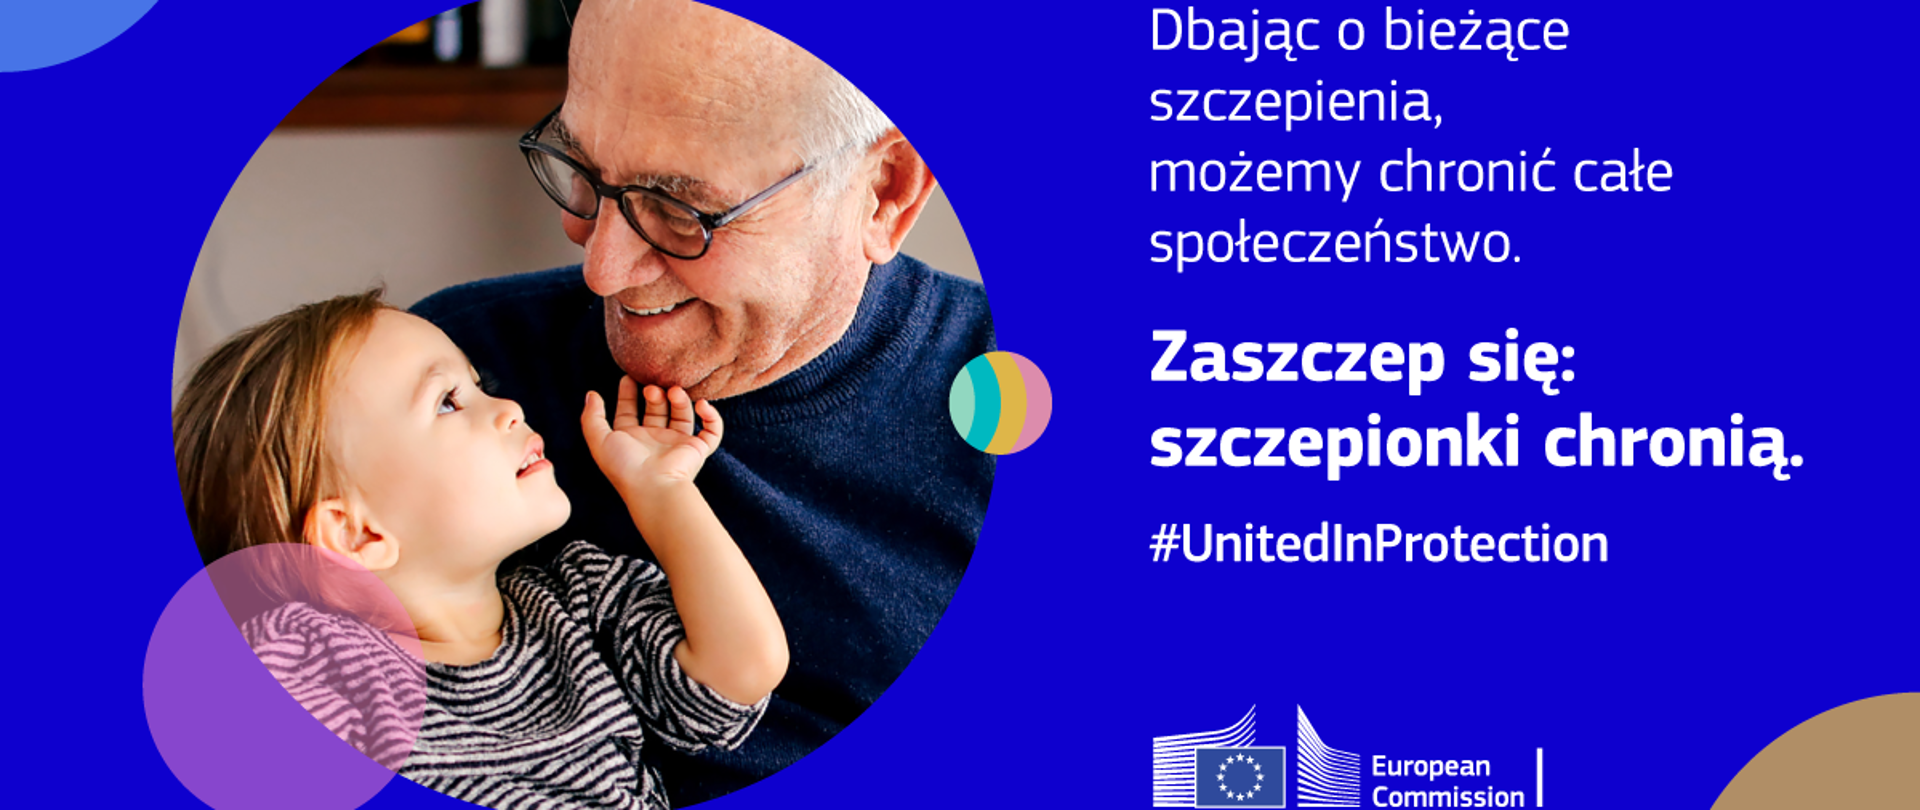 Zdjęcie uśmiechnętego starszego mężczyzny z dzieckiem. Dbając o bieżące szczepienia, możemy chronić całe społeczeństwo. Zaszczep się: szczepionki chronią. hasztagUnitedInProtection. European Commision